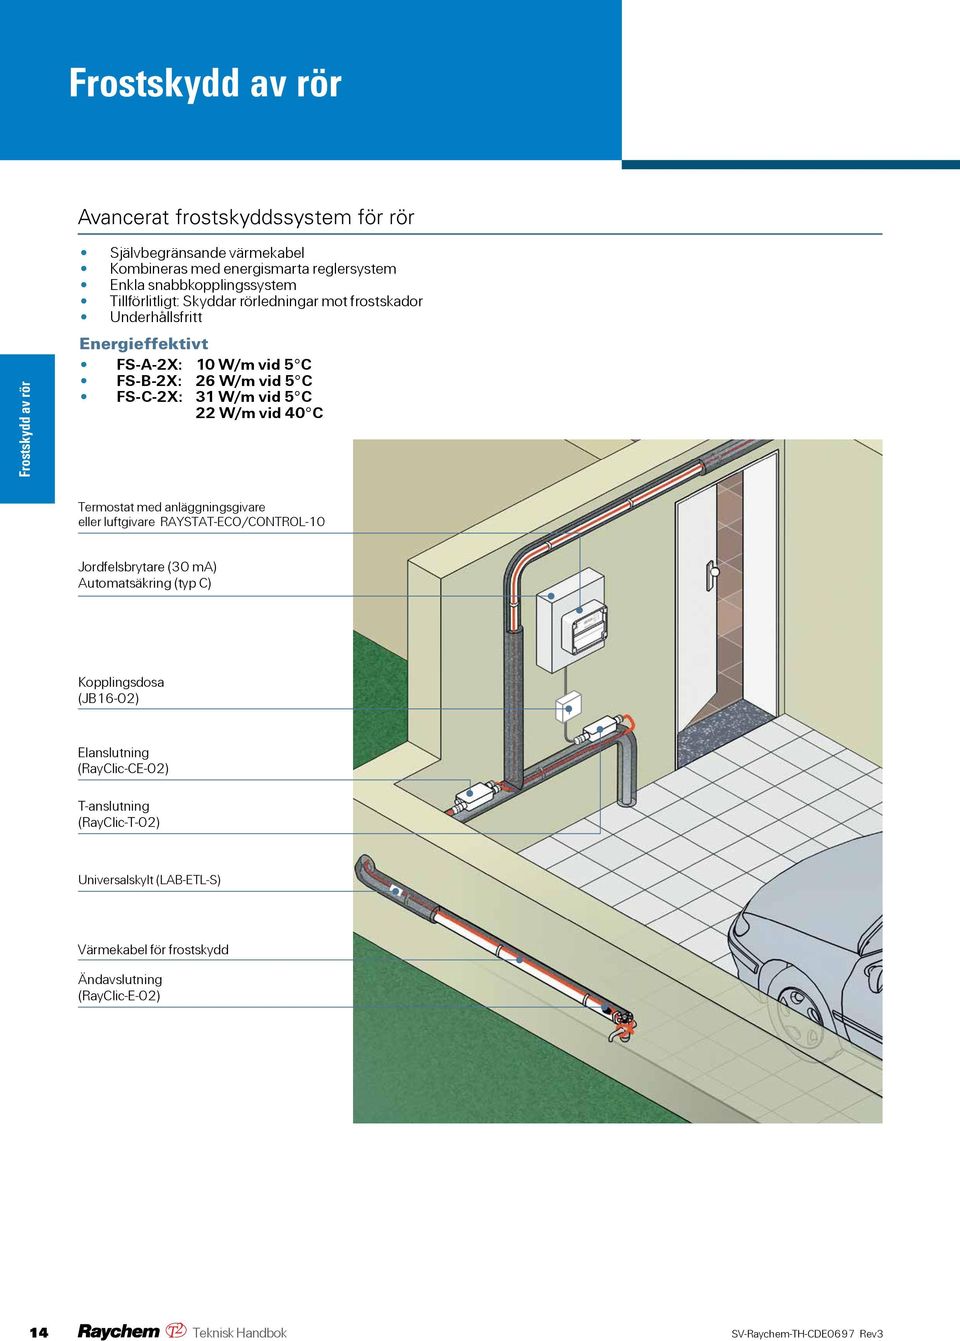 40 C Termostat med anläggningsgivare eller luftgivare RAYSTAT-ECO/CONTROL-10 Jordfelsbrytare (30 ma) Automatsäkring (typ C) Kopplingsdosa (JB16-02)